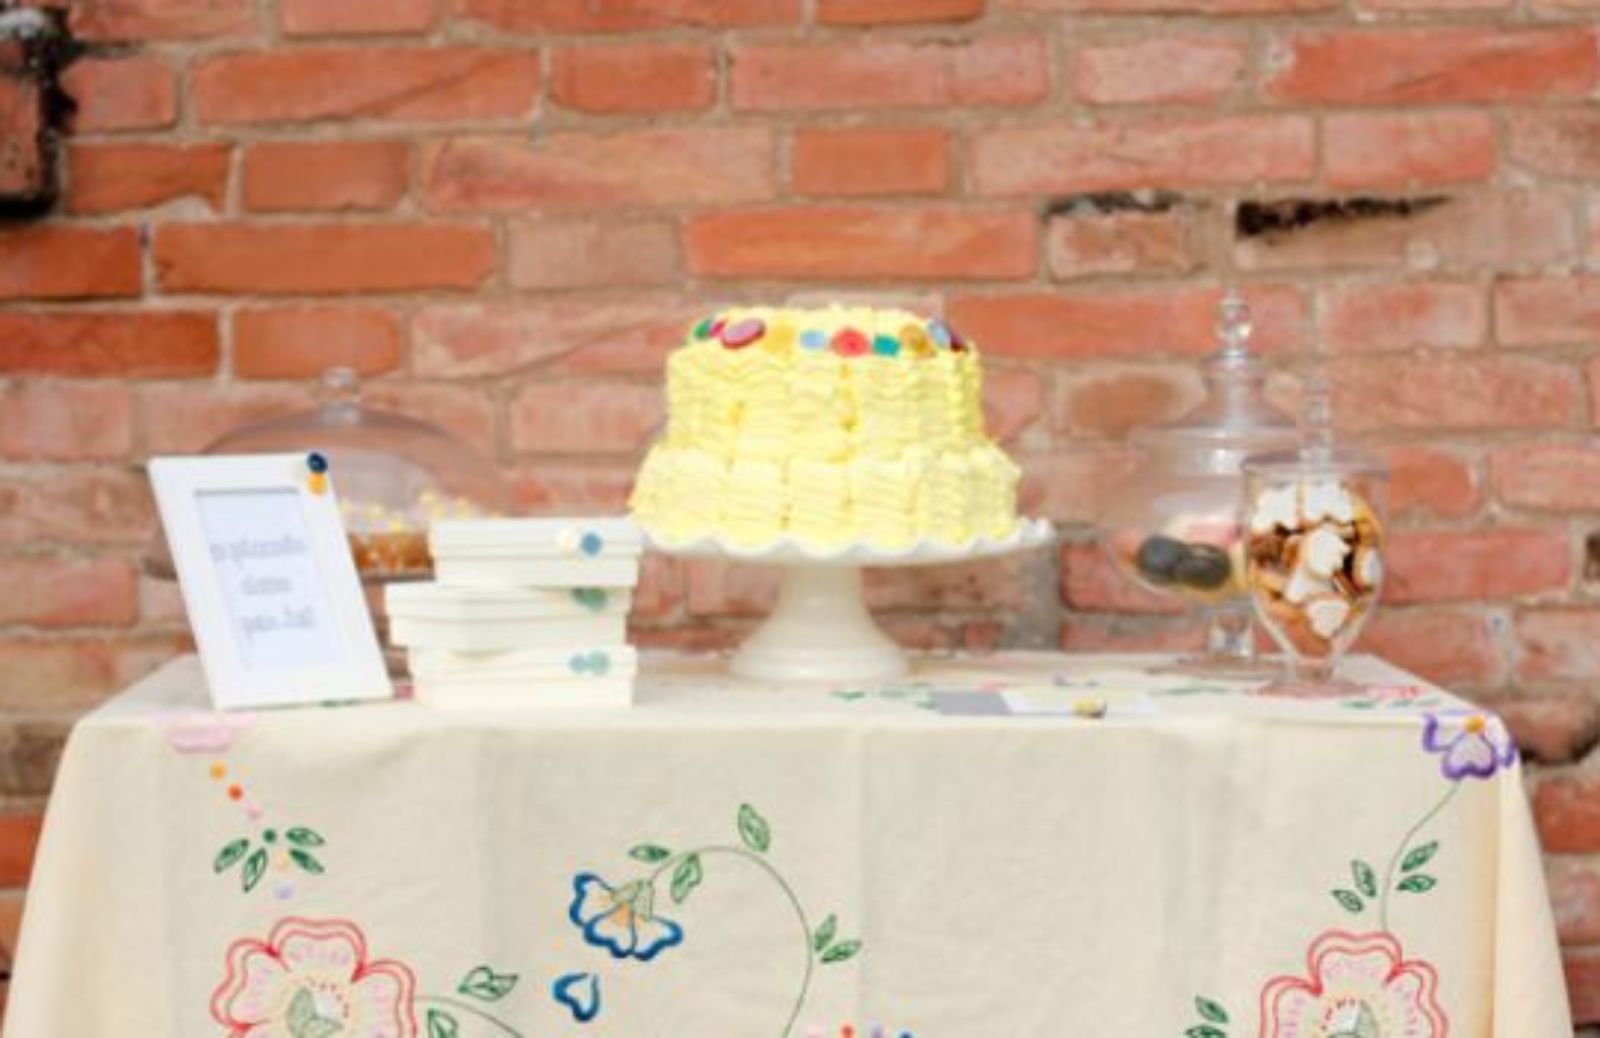 Il ricevimento di nozze: allestire un indimenticabile tavolo dei dolci